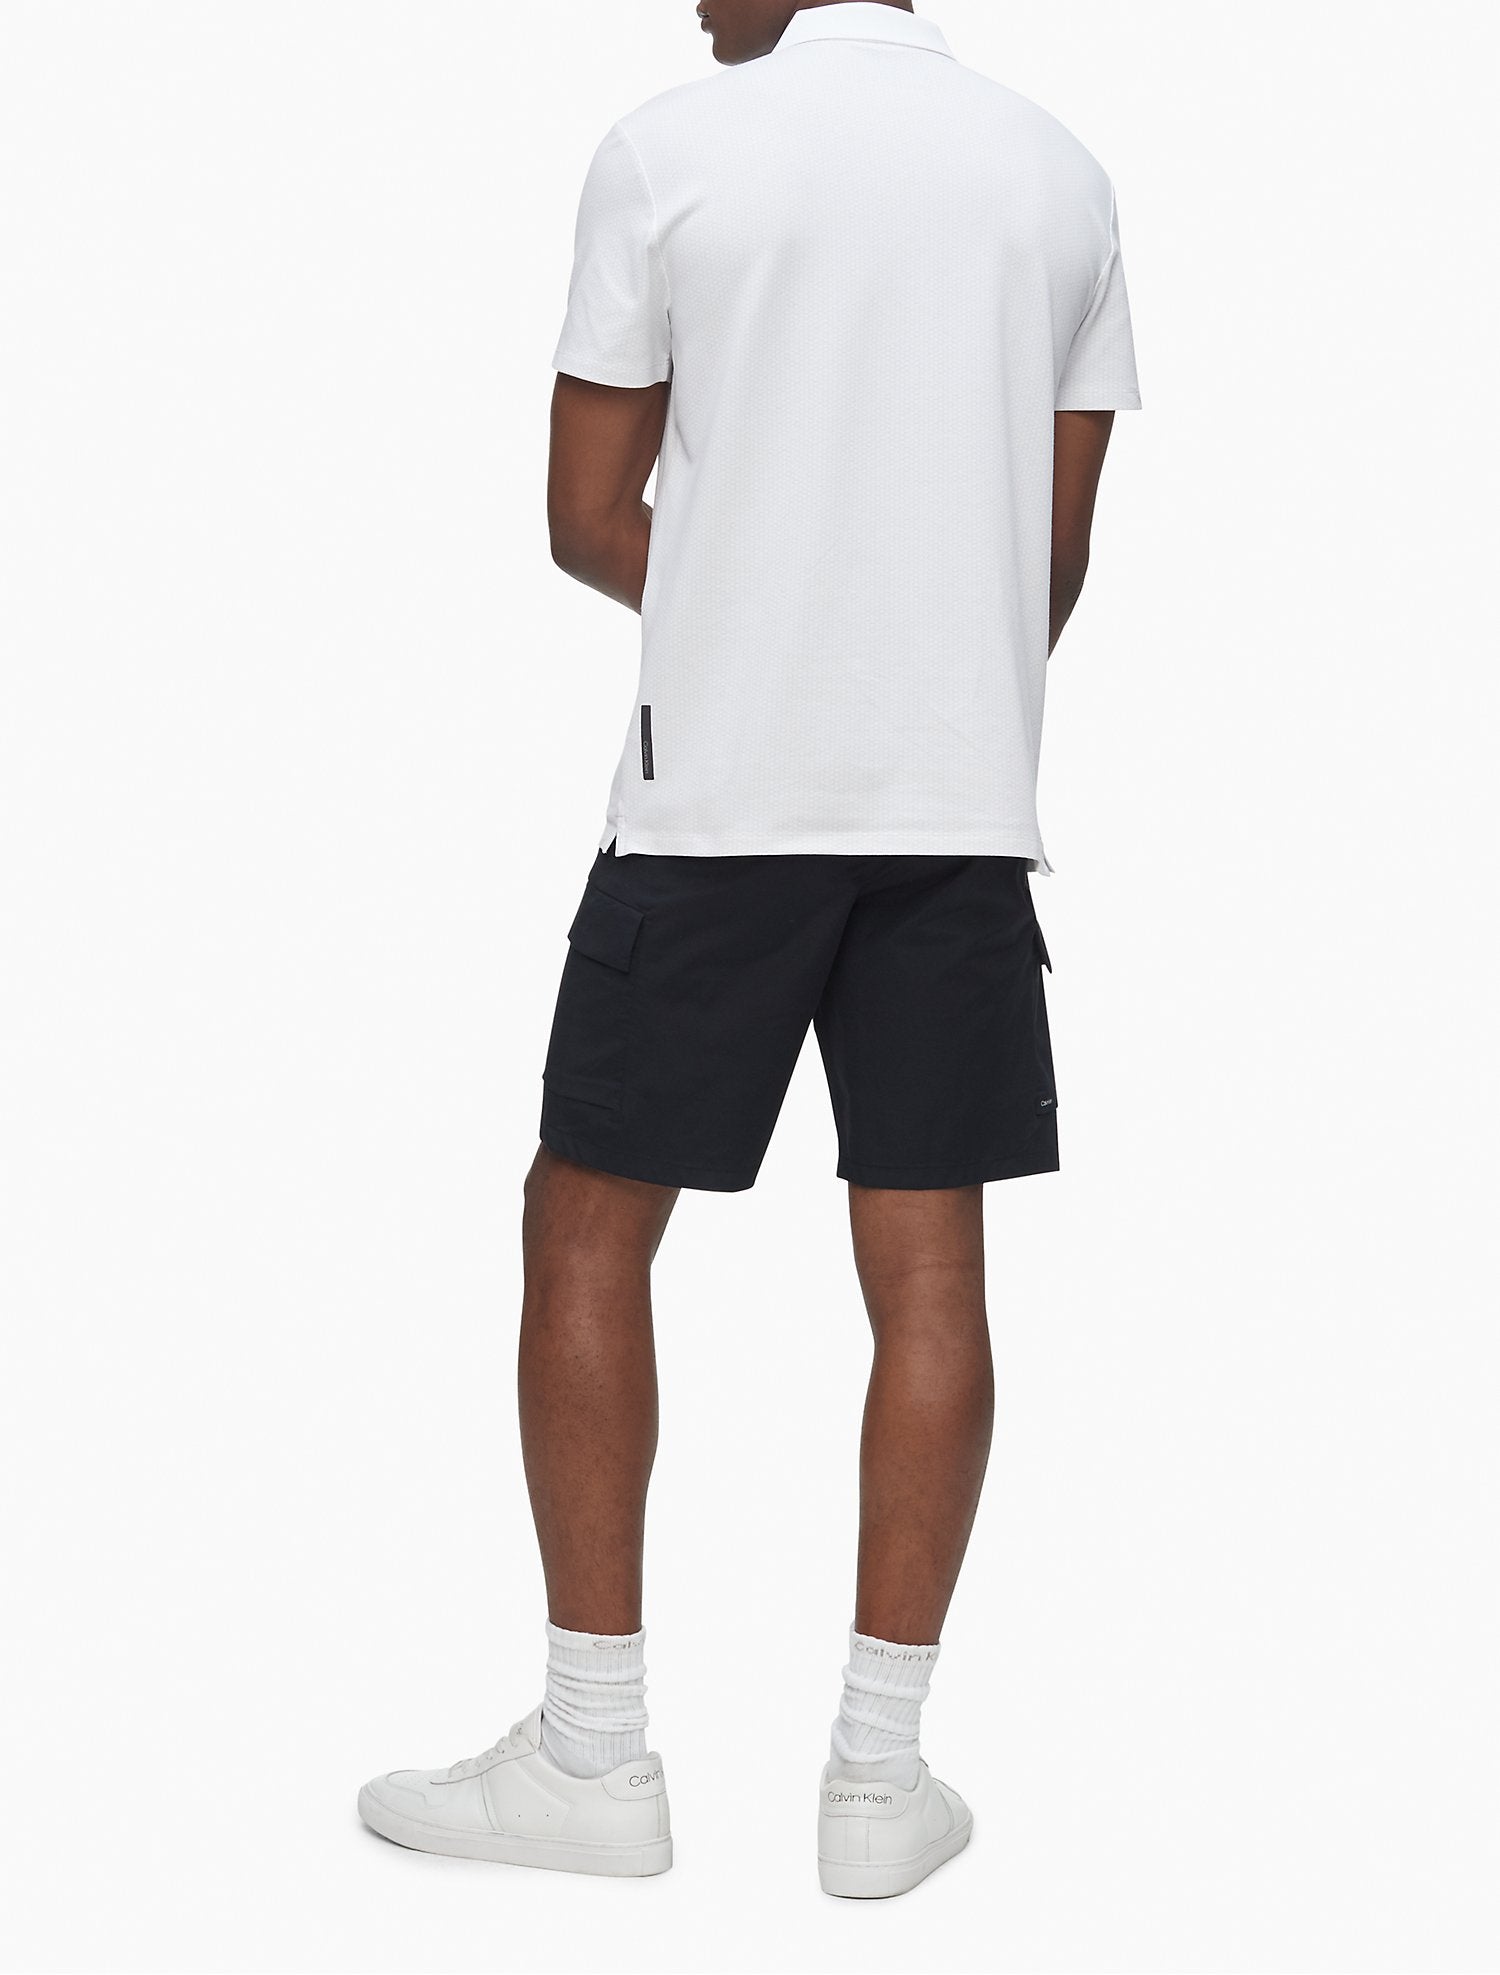 Calvin Klein Move 365 Pique Printed Polo Shirt - Men